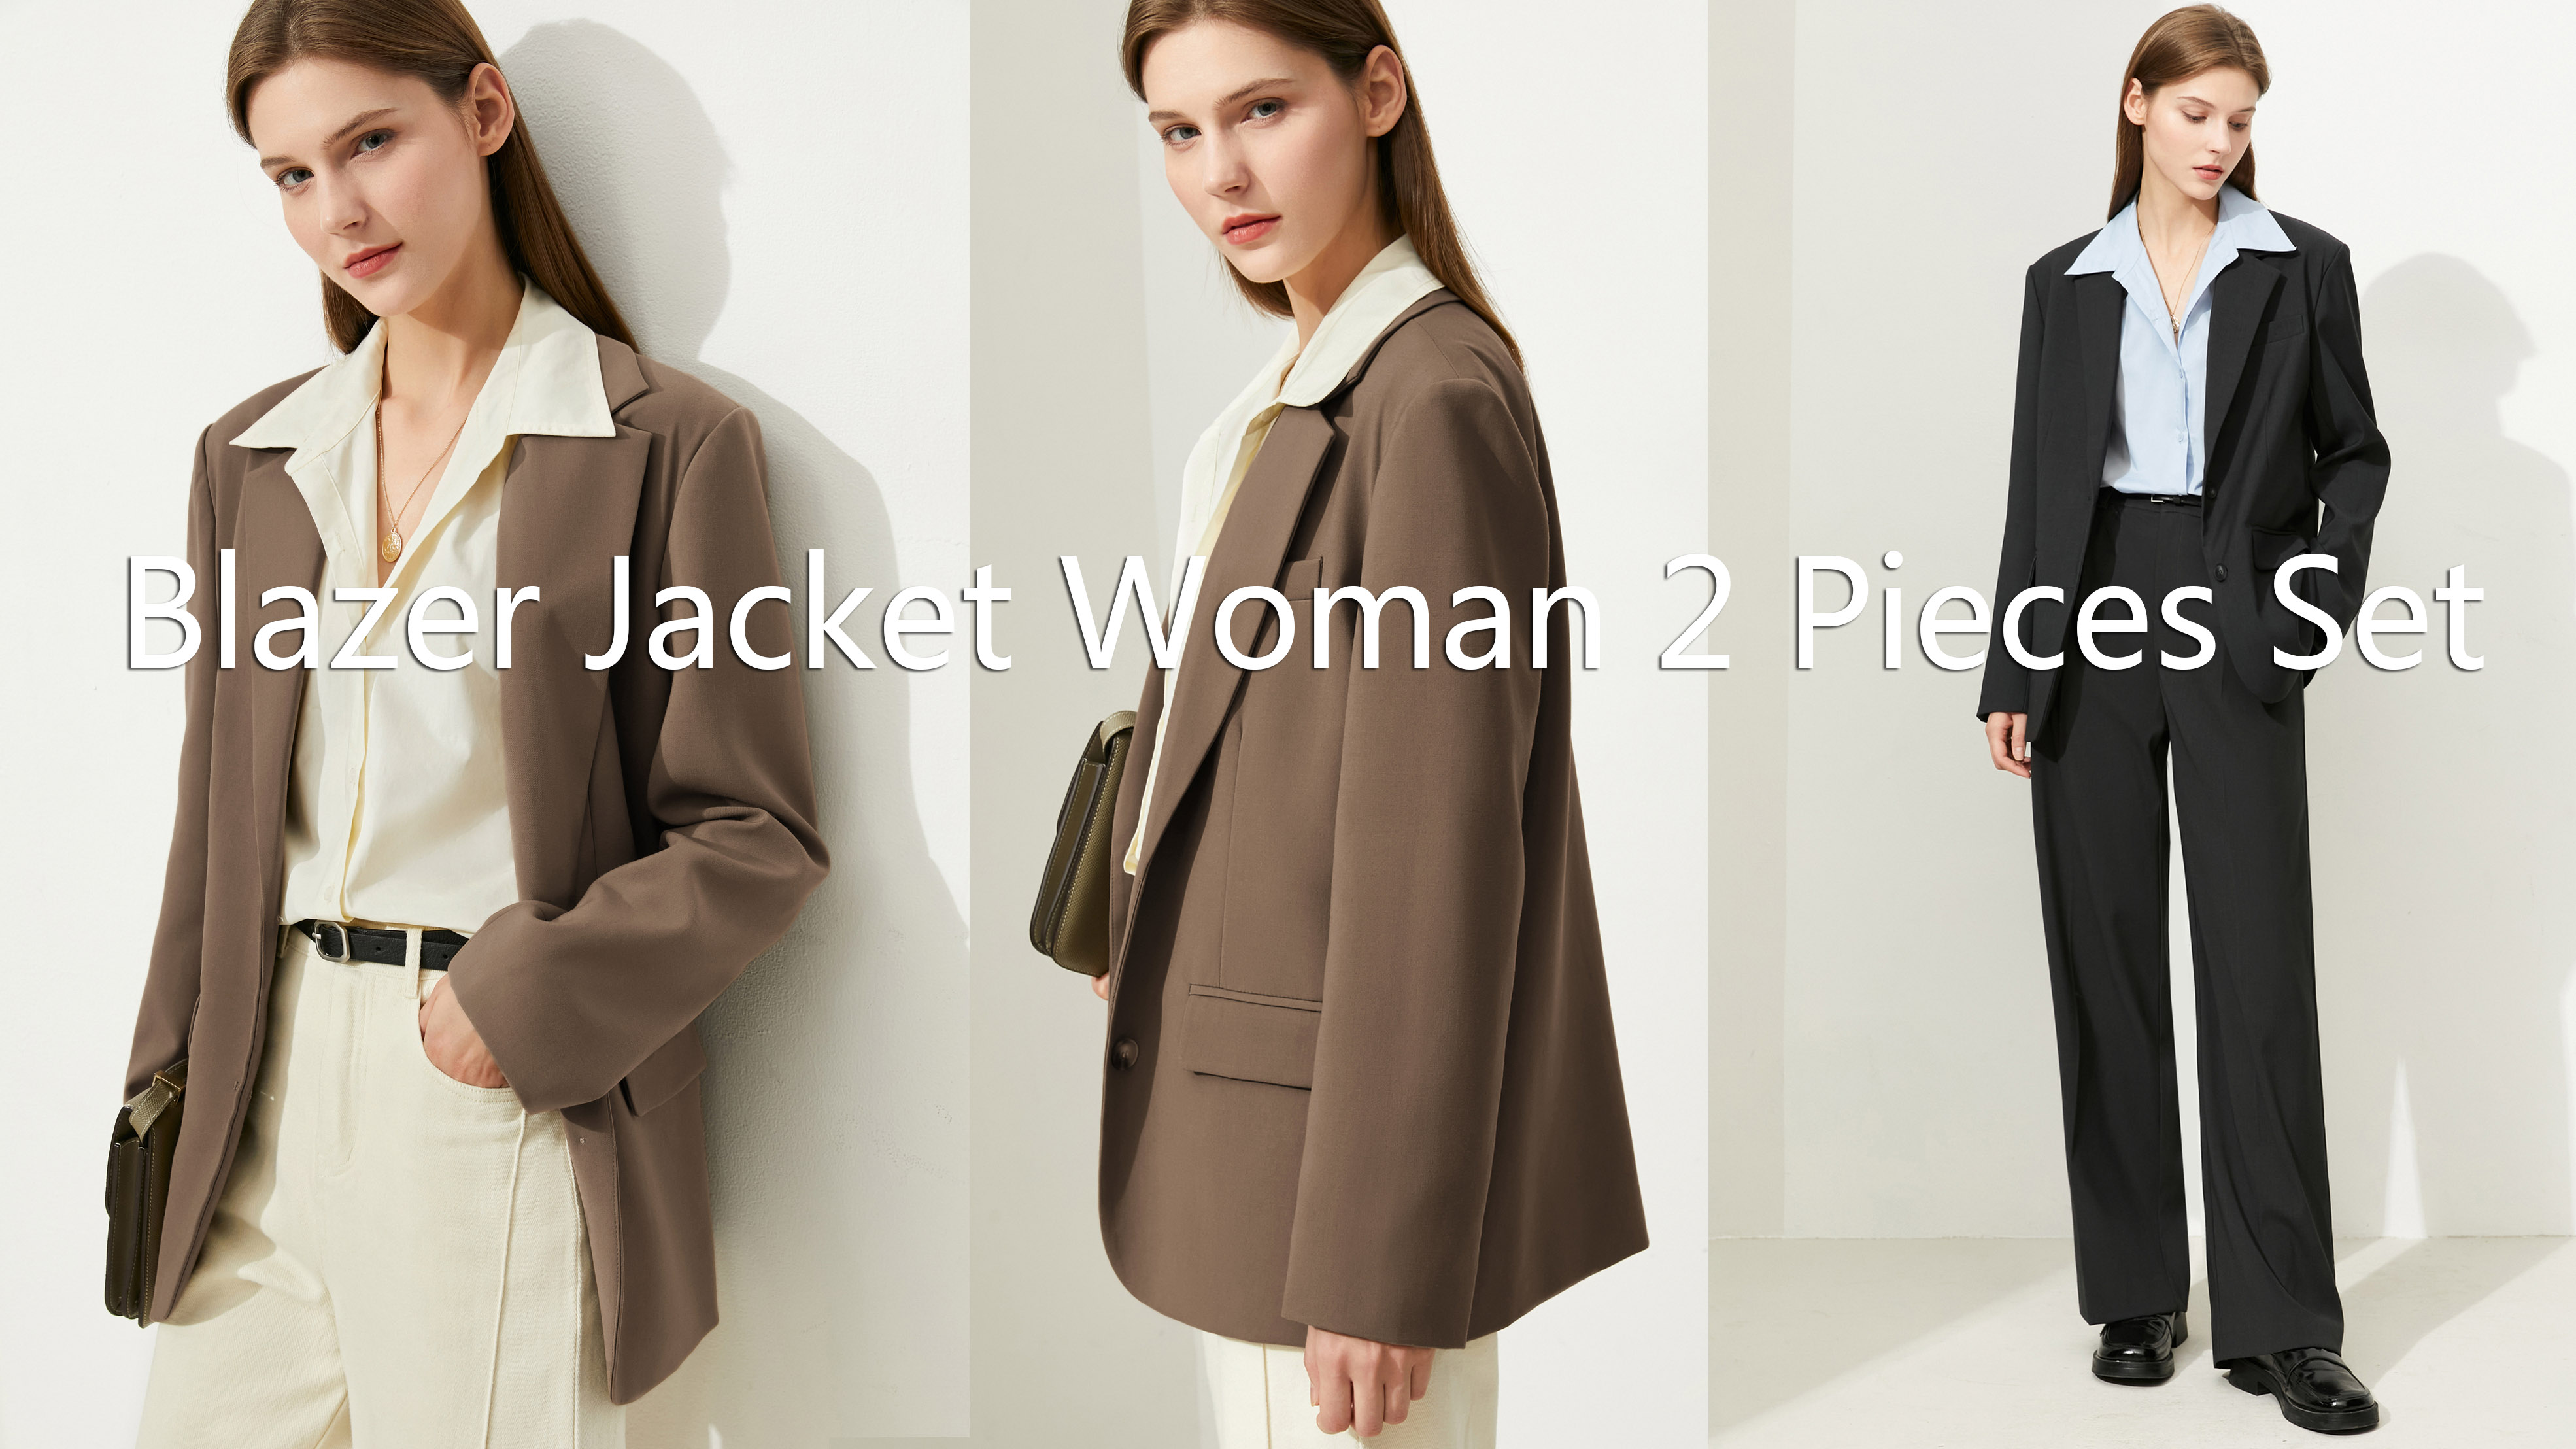 ผู้ผลิตชุดเสื้อแจ็คเก็ตเบลเซอร์ผู้หญิง 2 ชิ้นคุณภาพ |ออสชาลิงค์